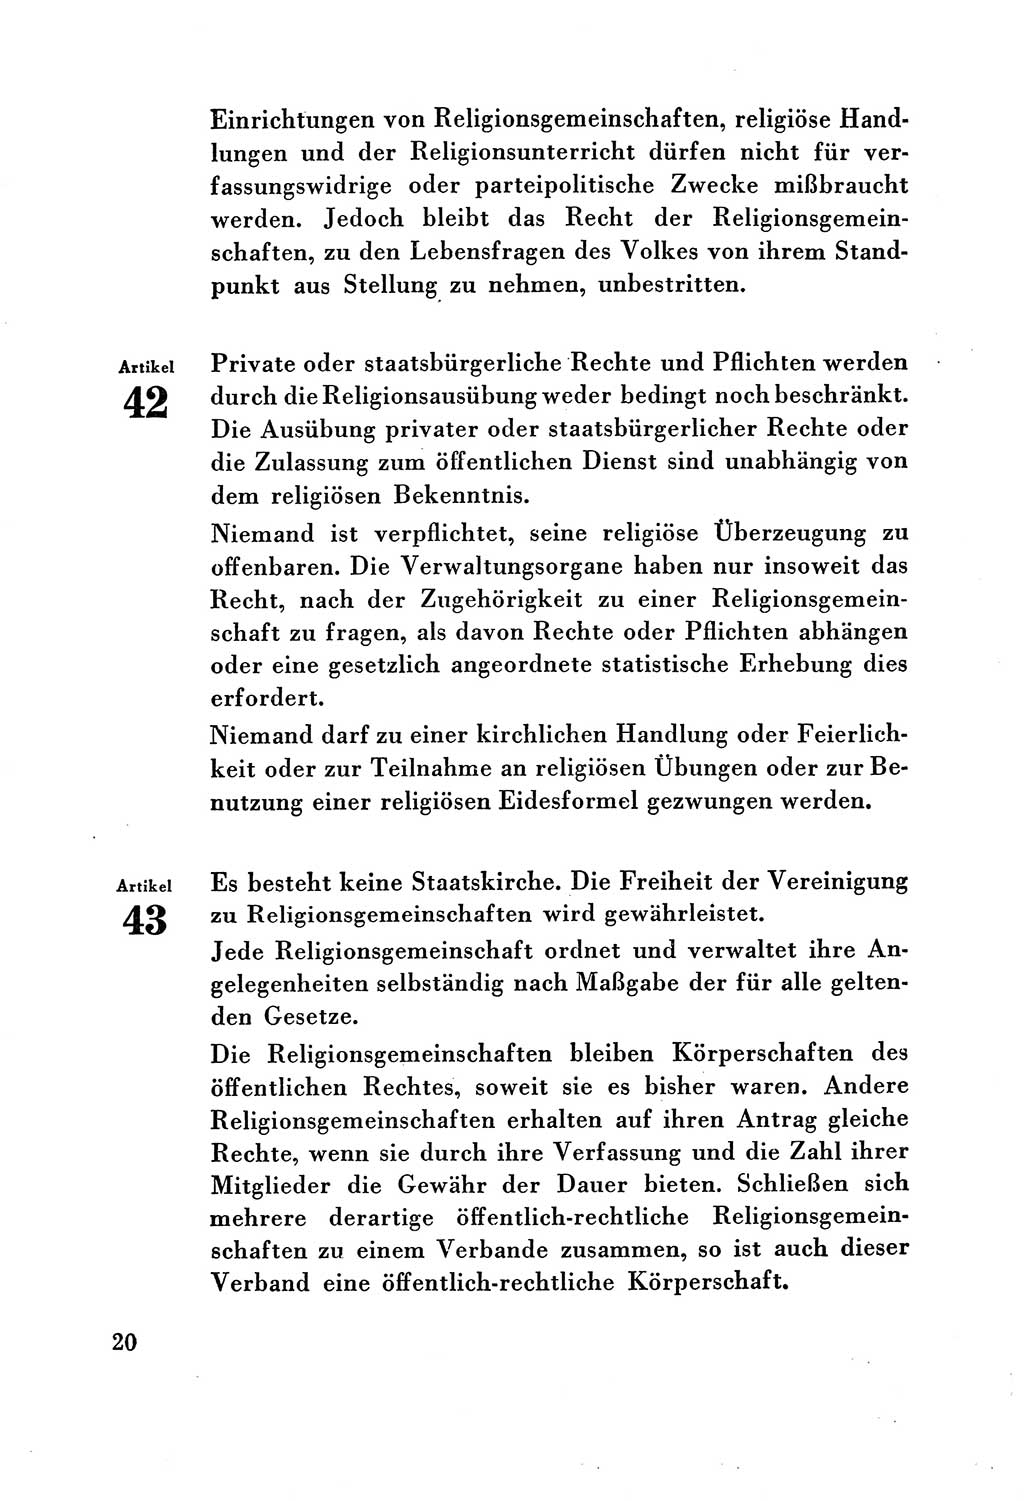 Verfassung der Deutschen Demokratischen Republik (DDR) vom 7. Oktober 1949, Seite 20 (Verf. DDR 1949, S. 20)